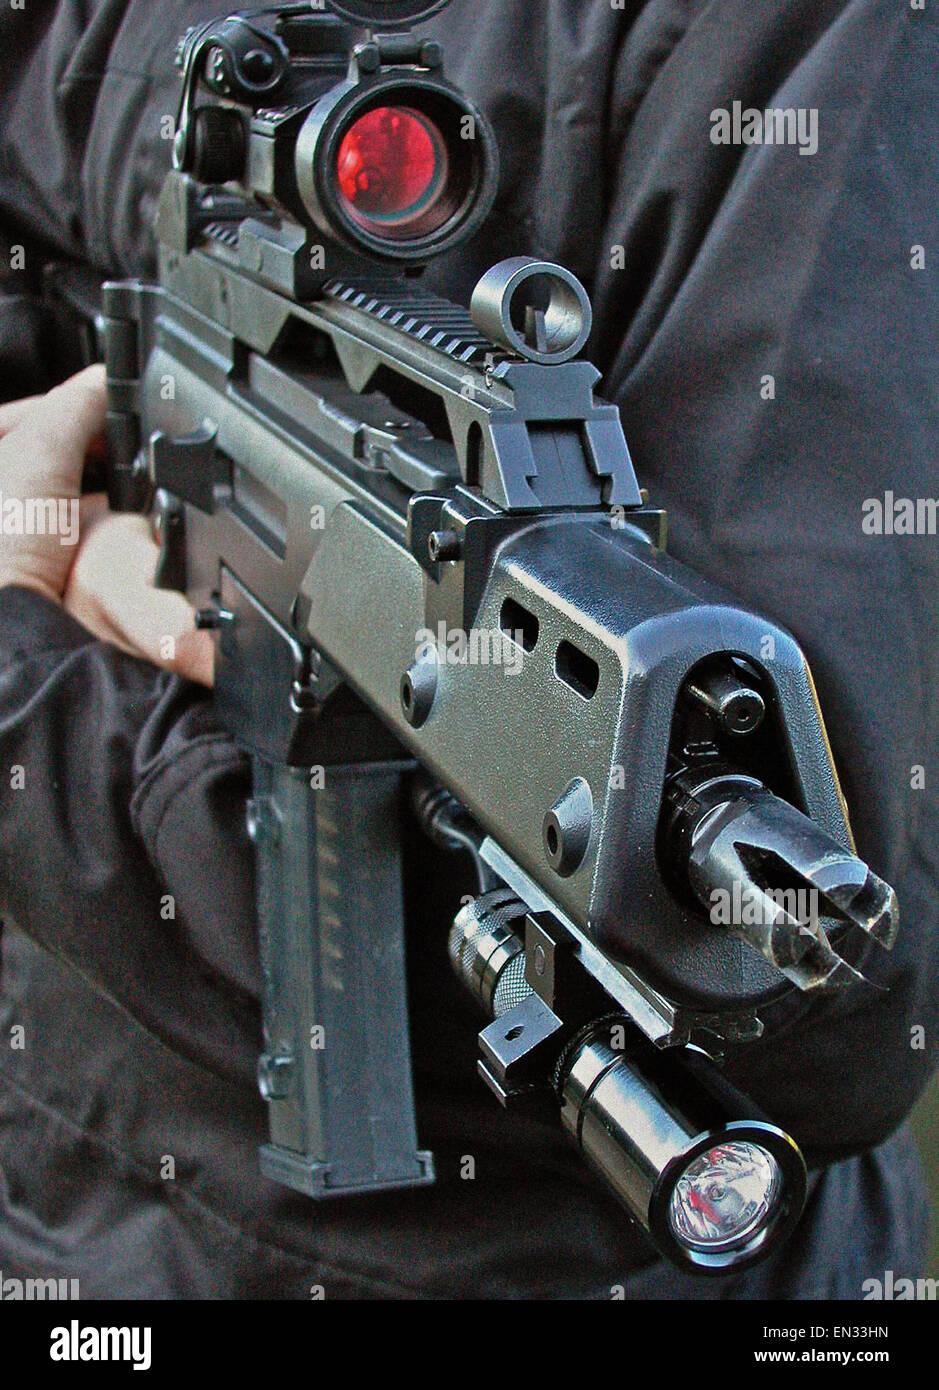 Un Heckler & Koch G36 C (5,56 mm x 45 calibre OTAN fusil d'assaut au gaz) favorisée par la la loi (Police). Il a les dimensions d'une mitraillette combiné avec la capacité de pénétration du calibre 5,56 OTAN. Banque D'Images